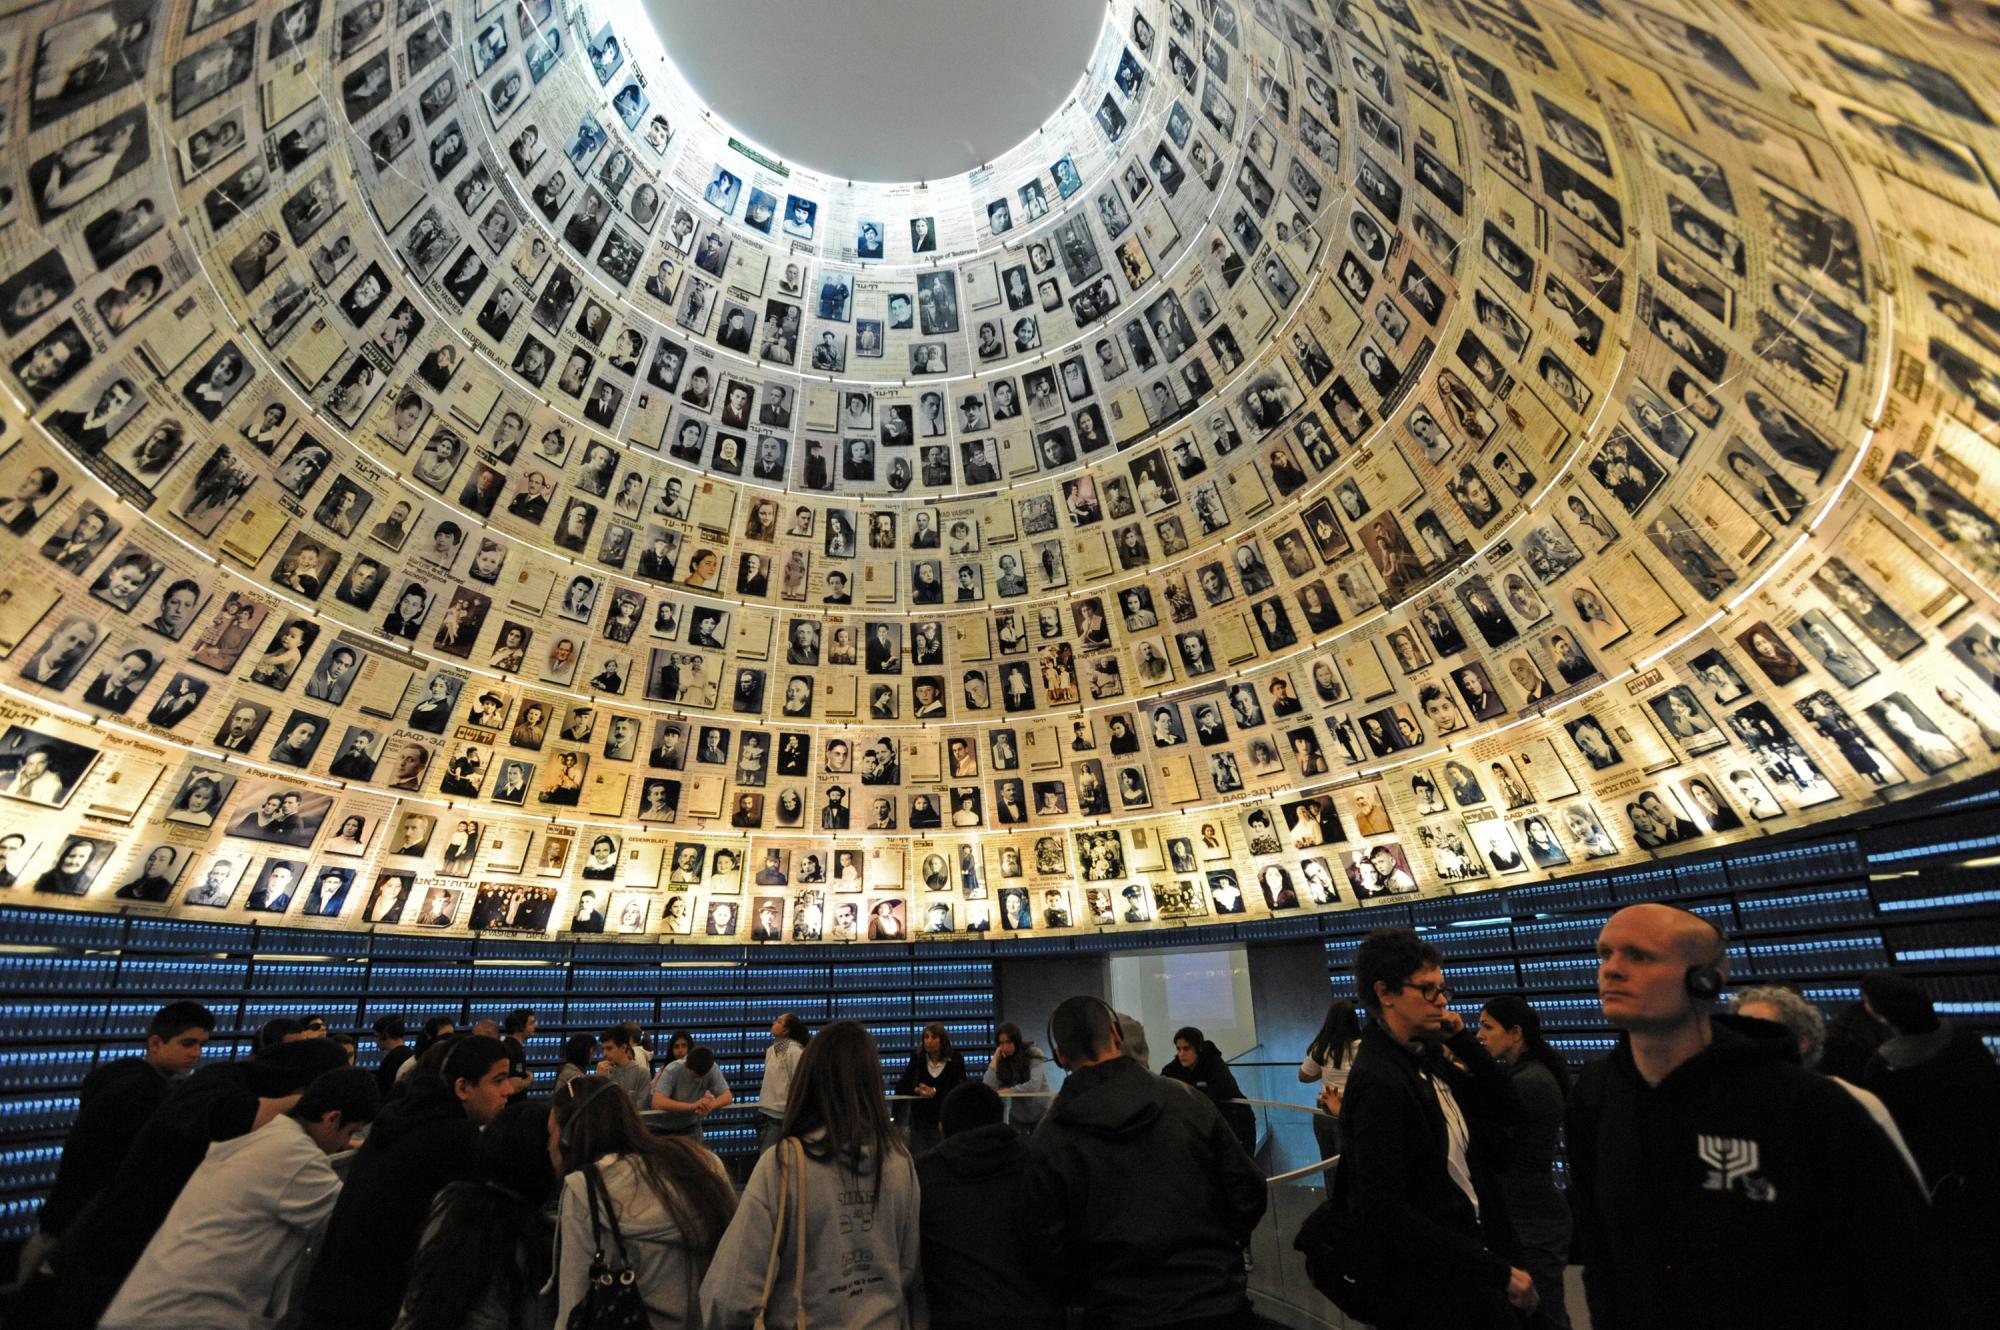 Արմեն Սարգսյանը Իսրայելի նախագահի հրավերով մասնակցում է Հոլոքոսթի հիշատակին նվիրված համաժողովին